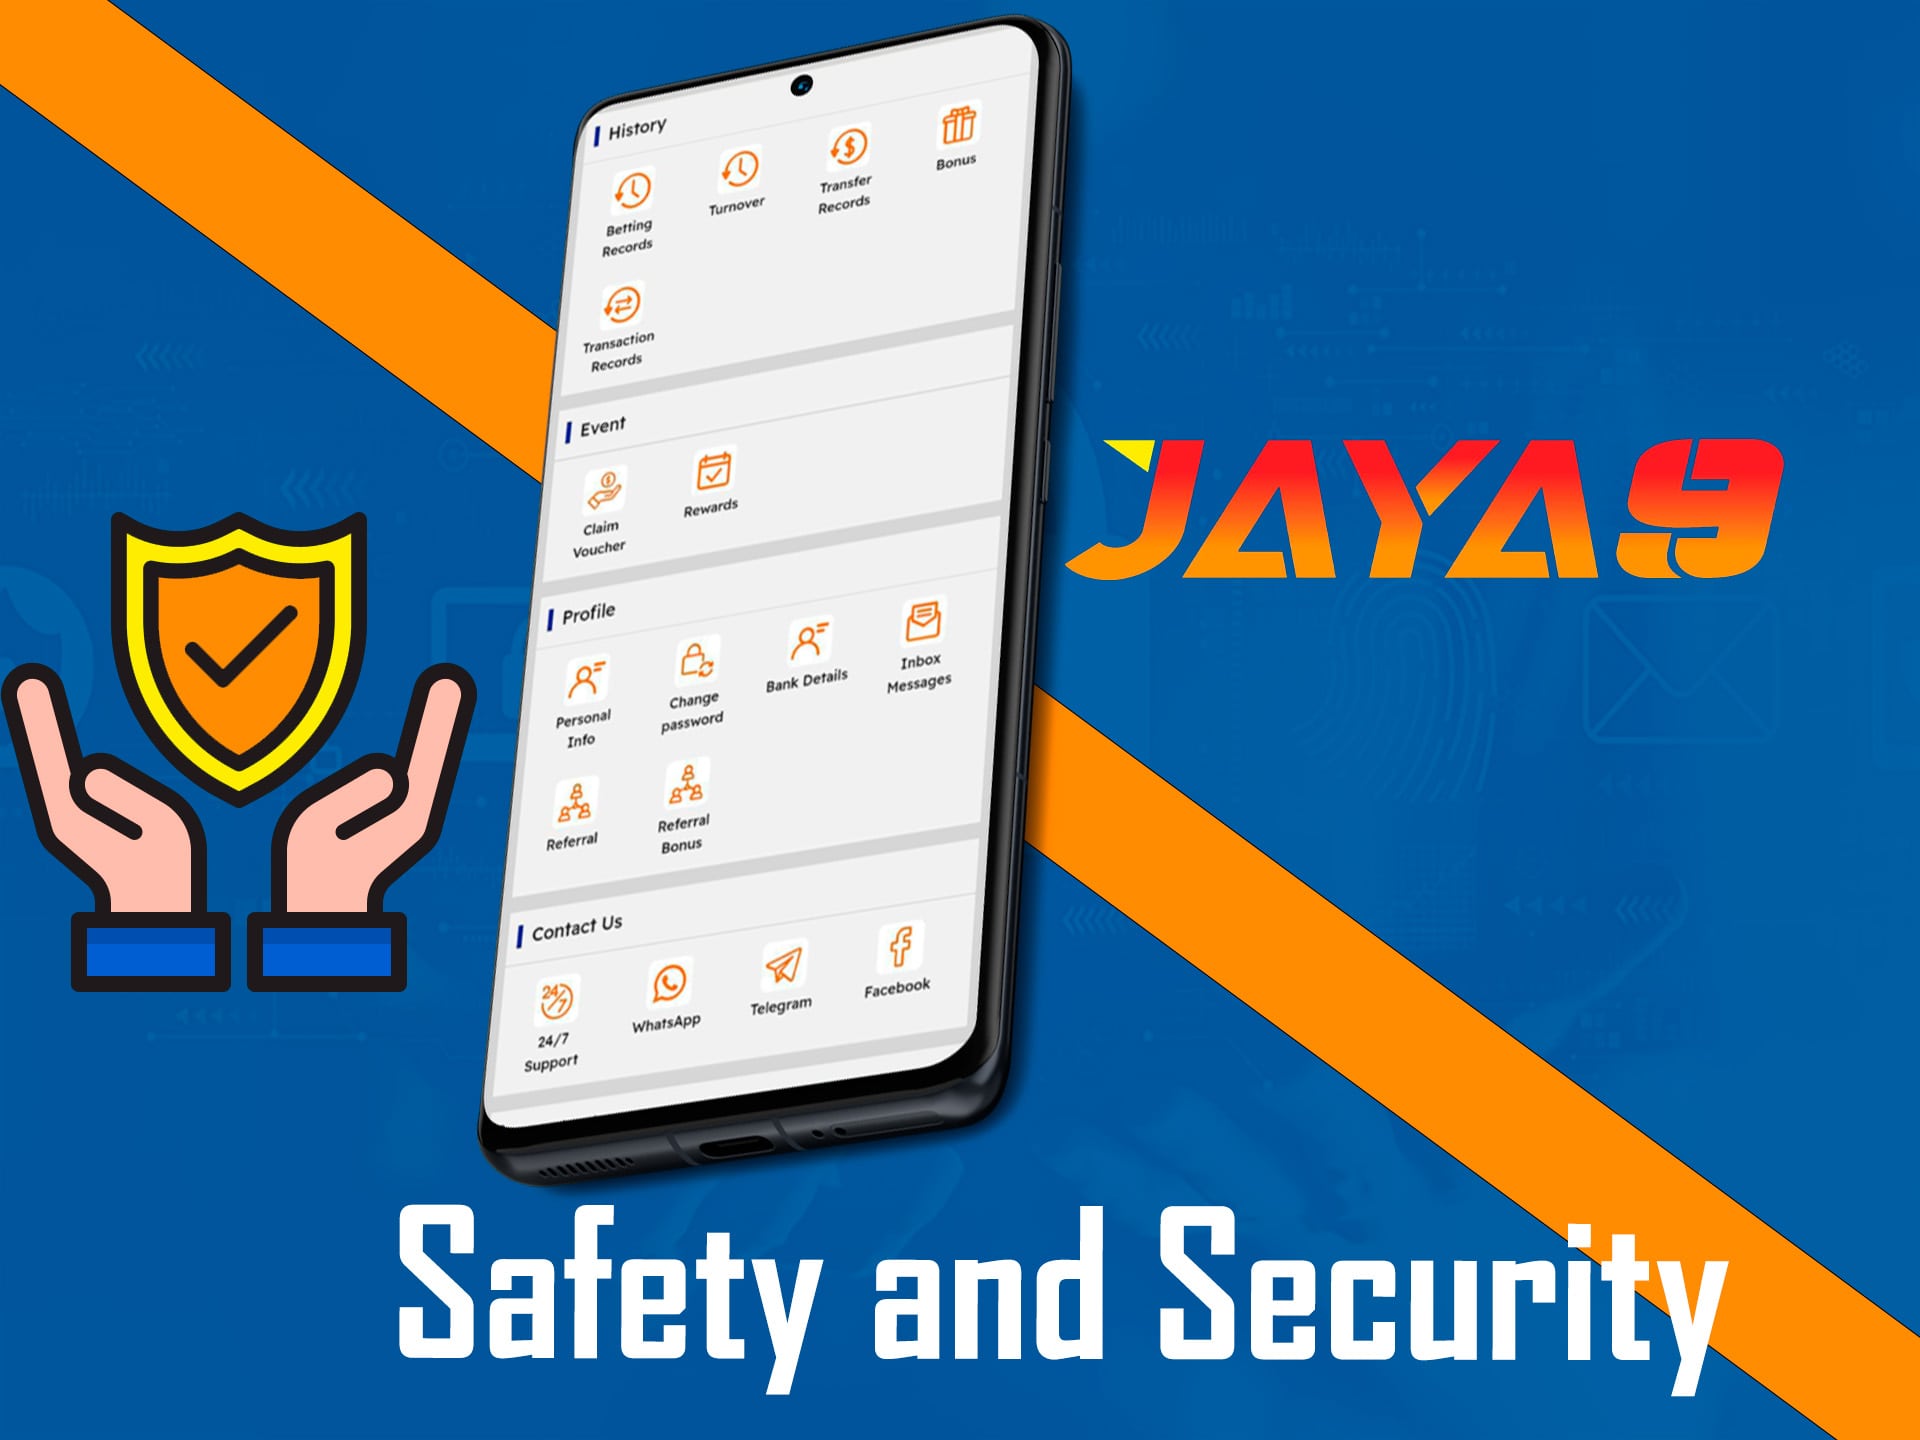 securitya t jaya9 website